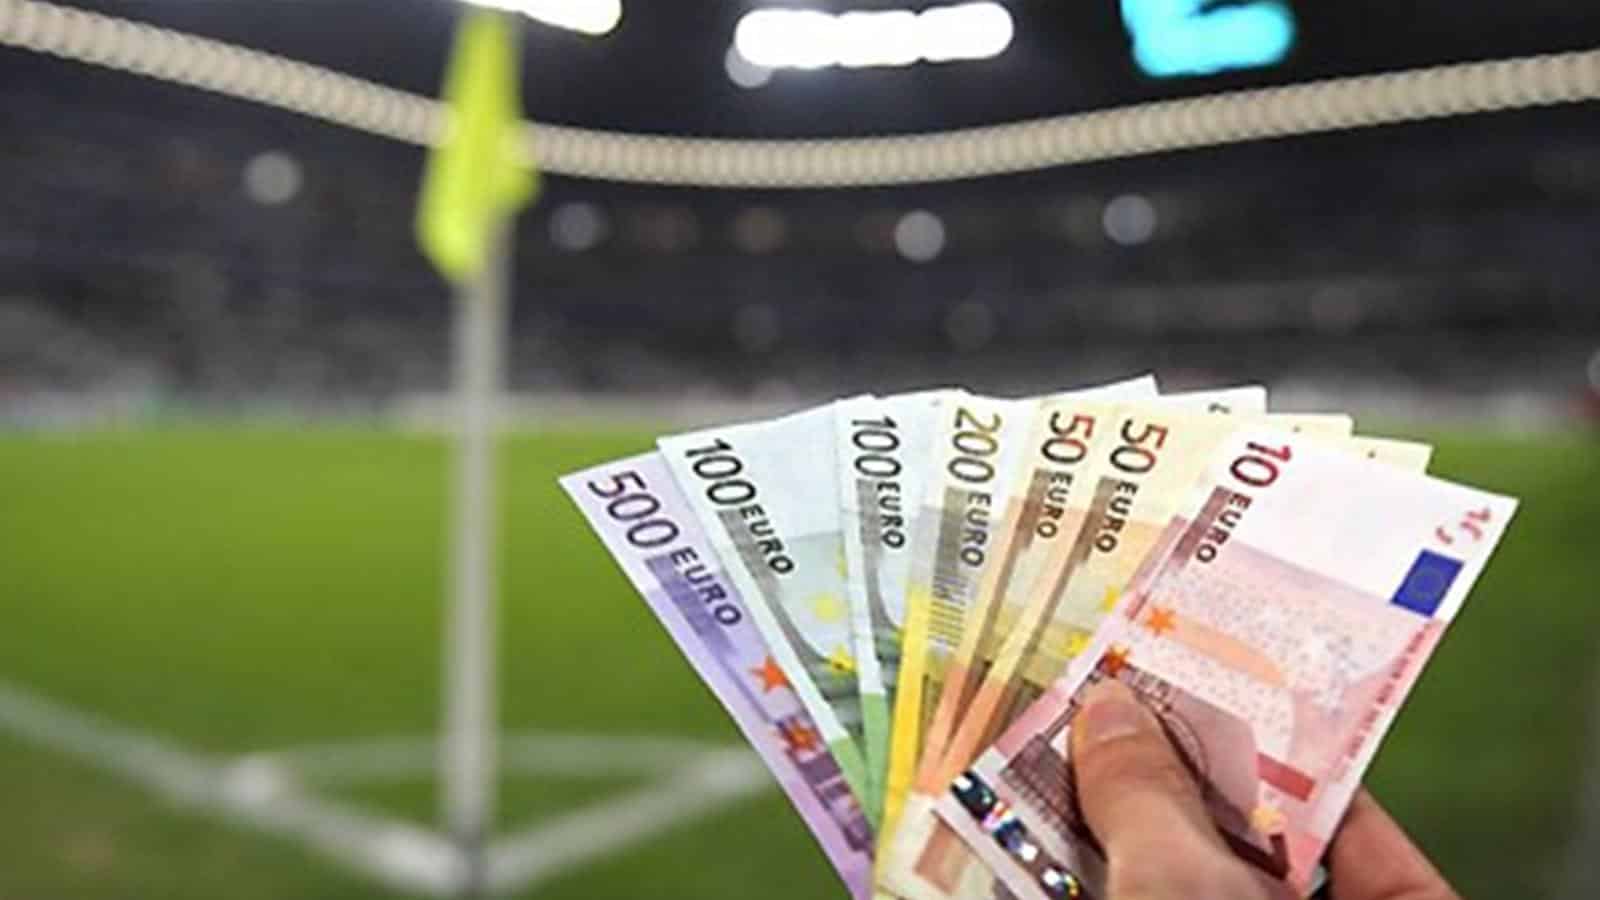 Gioco online: nel 2019 la spesa per le scommesse sportive è stata di 725,6 milioni di euro